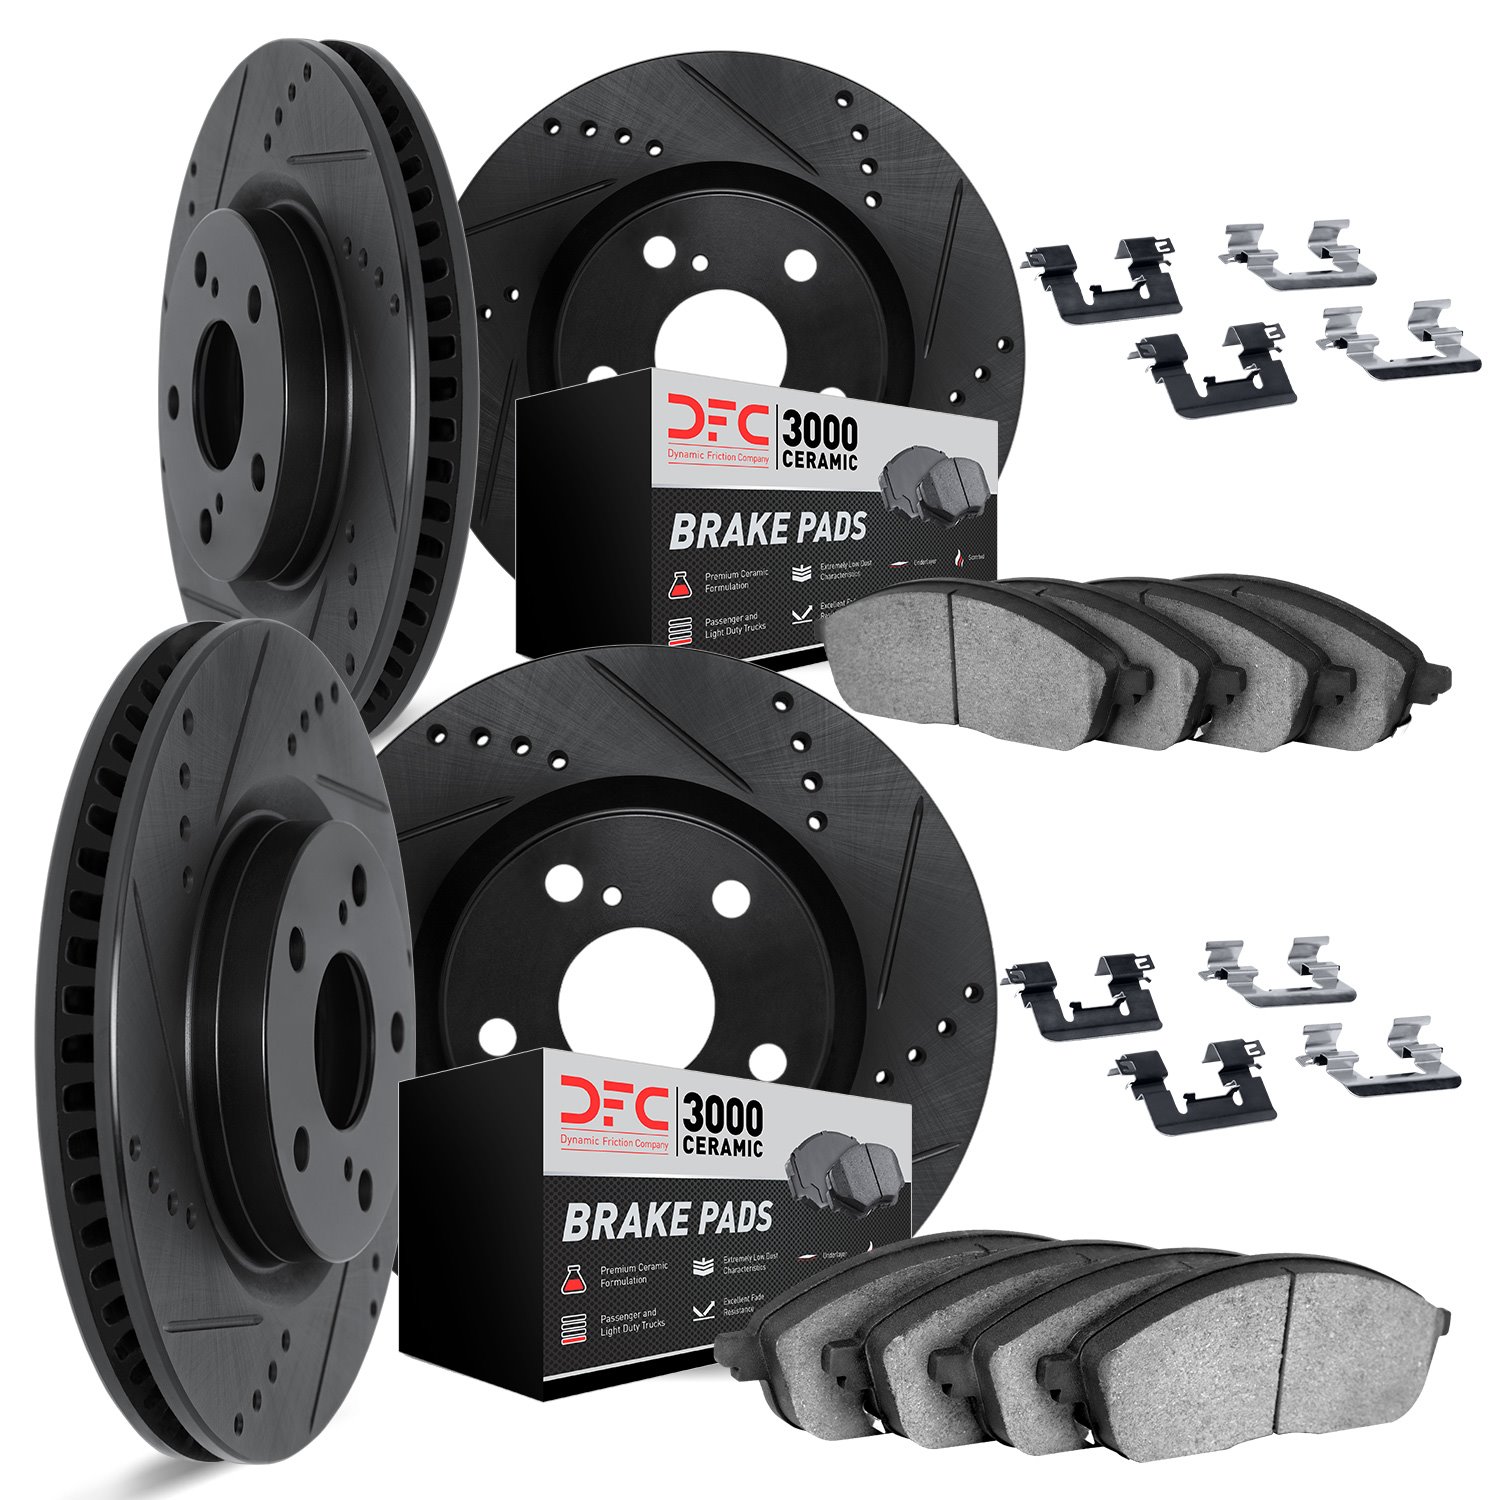 8314-76073 Drilled/Slotted Brake Rotors with 3000-Series Ceramic Brake Pads Kit & Hardware [Black], 2014-2015 Lexus/Toyota/Scion